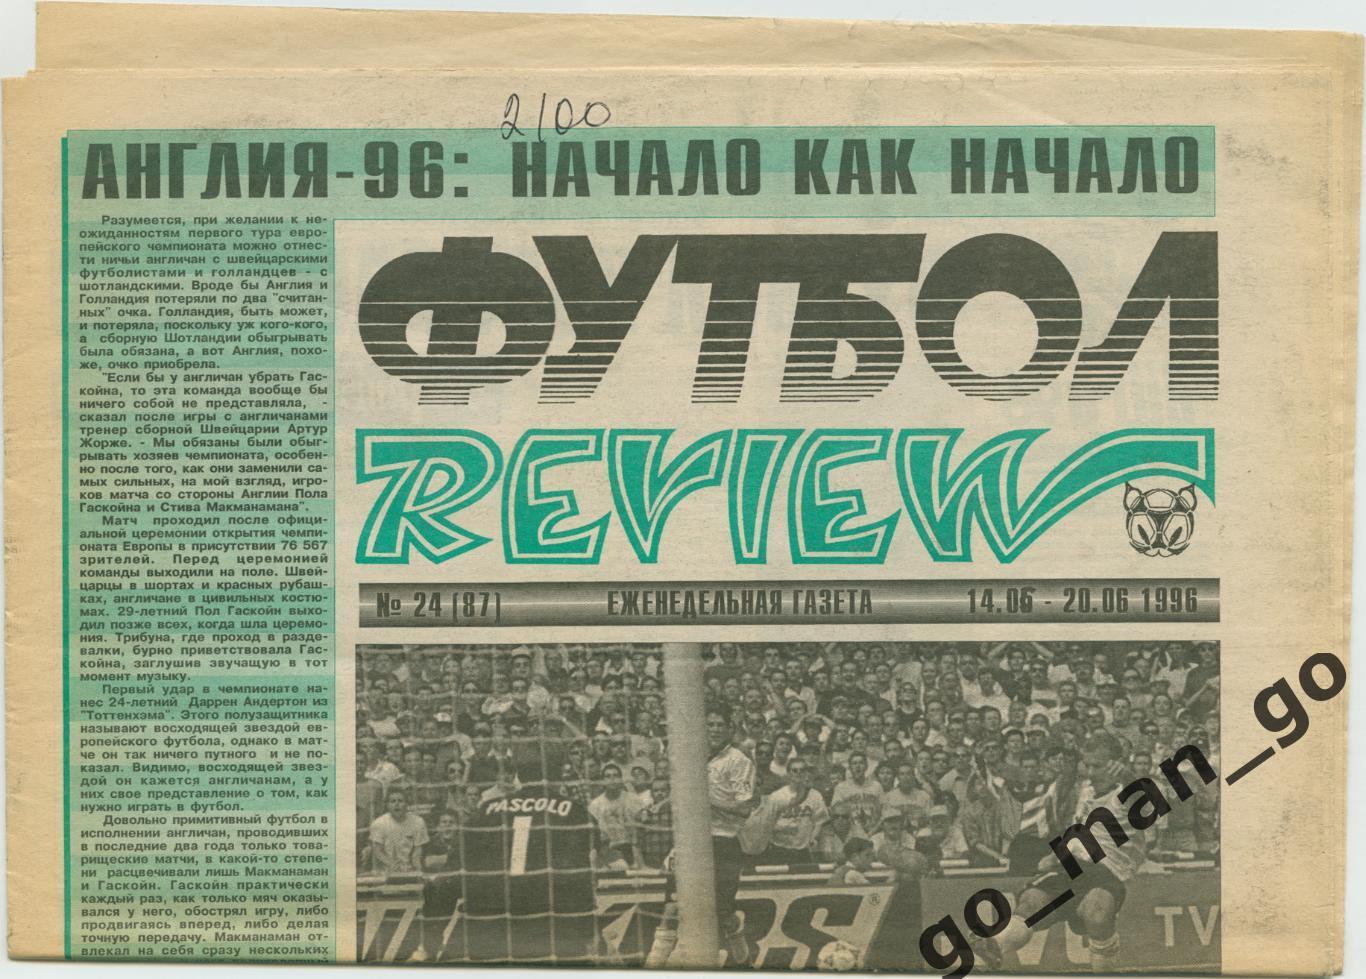 Еженедельник Футбол-Review (Футбол-Ревю), 14-20.06.1996, № 24.